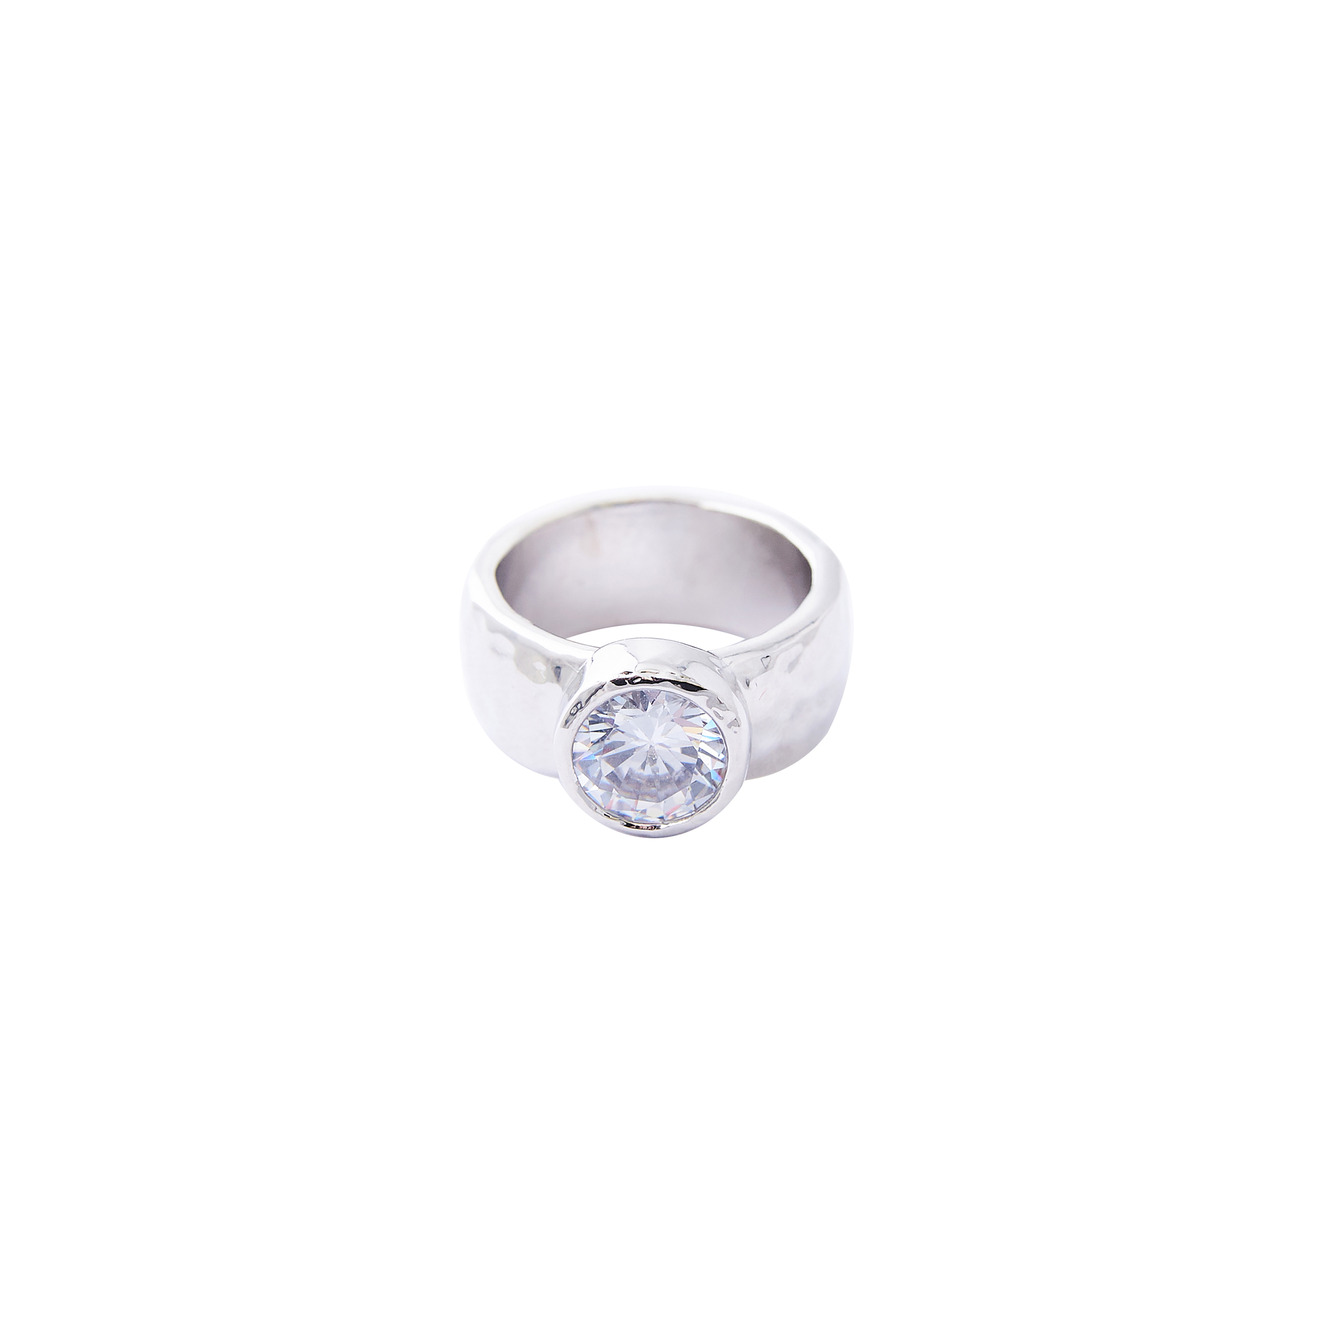 Herald Percy Серебристое высокое кольцо с крупным кристаллом herald percy серебристое фигурное кольцо с черным сердцем